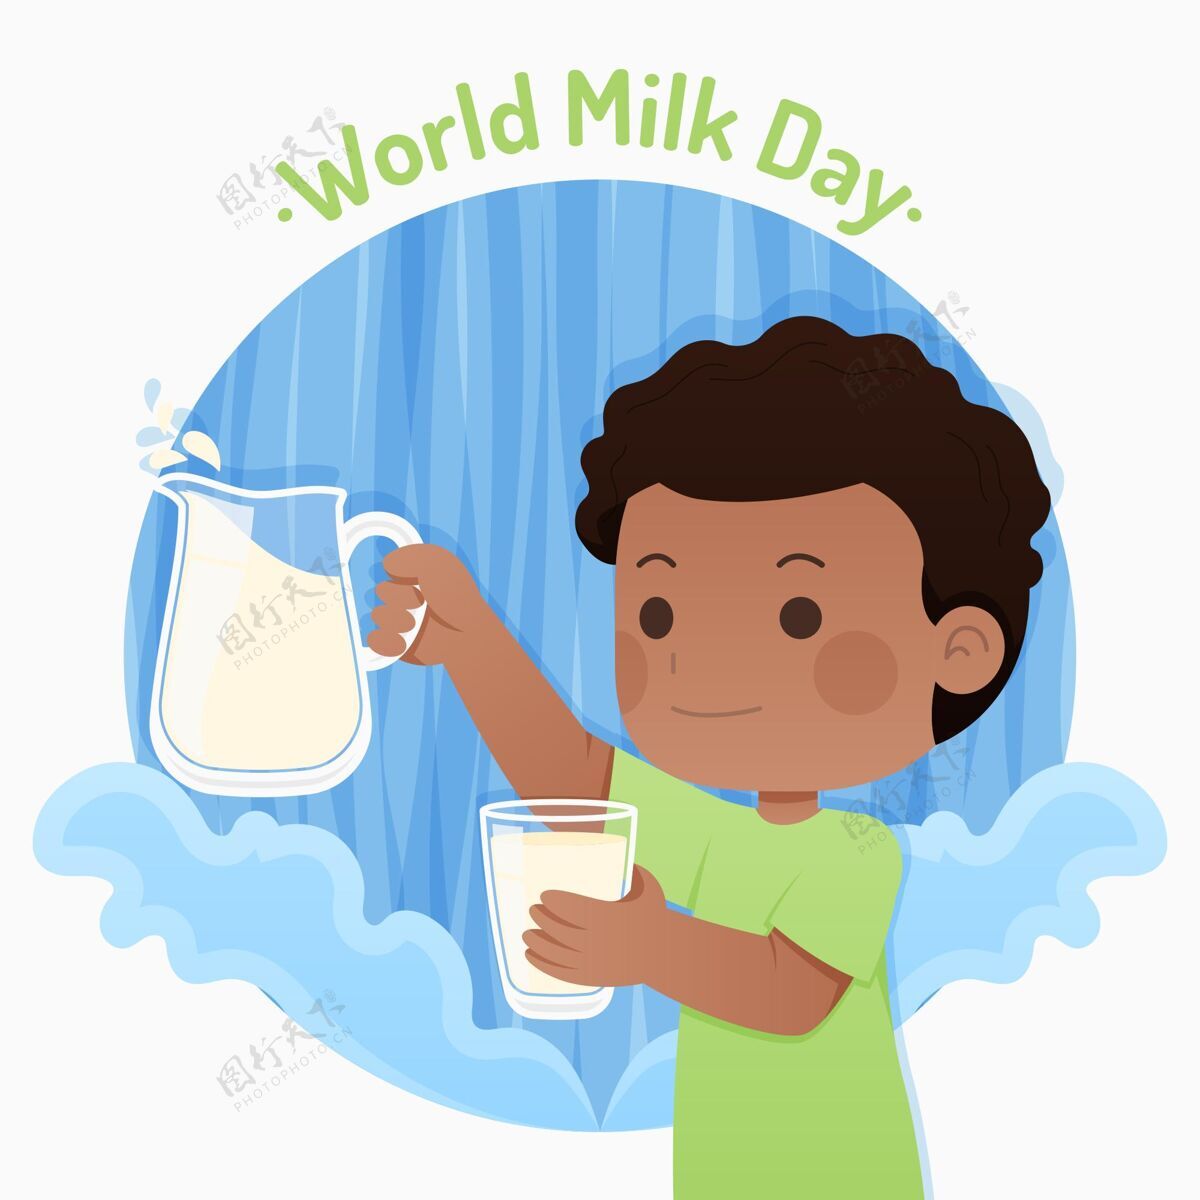 牛奶平面世界牛奶日插画营养全球食品